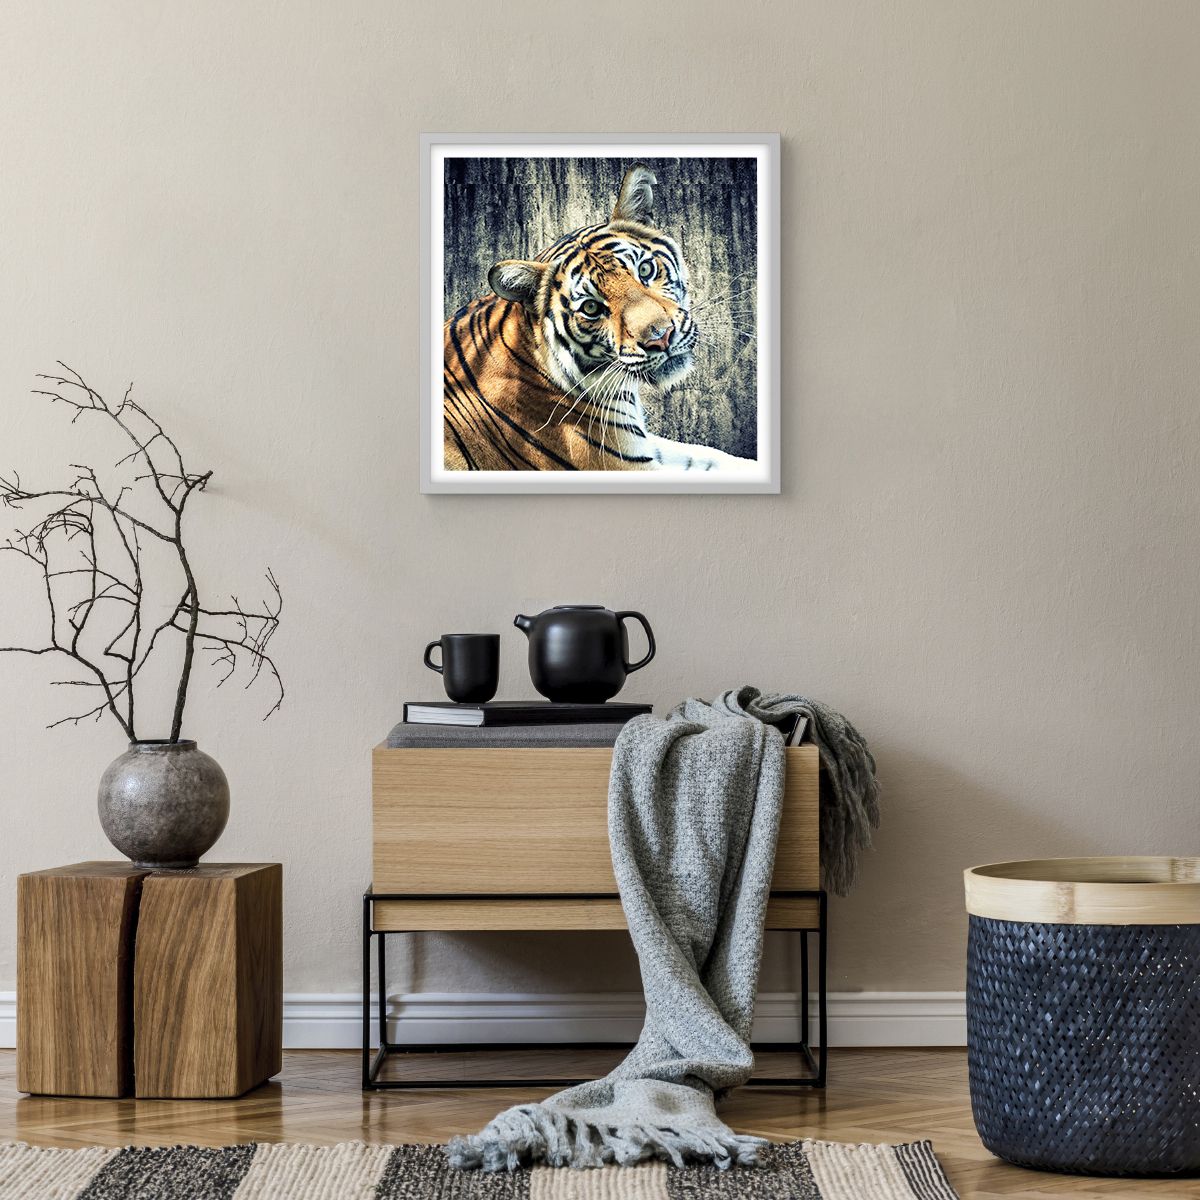 Poster in einem weißen Rahmen Tiere, Poster in einem weißen Rahmen Tiger, Poster in einem weißen Rahmen Afrika, Poster in einem weißen Rahmen Wildes Tier, Poster in einem weißen Rahmen Indien